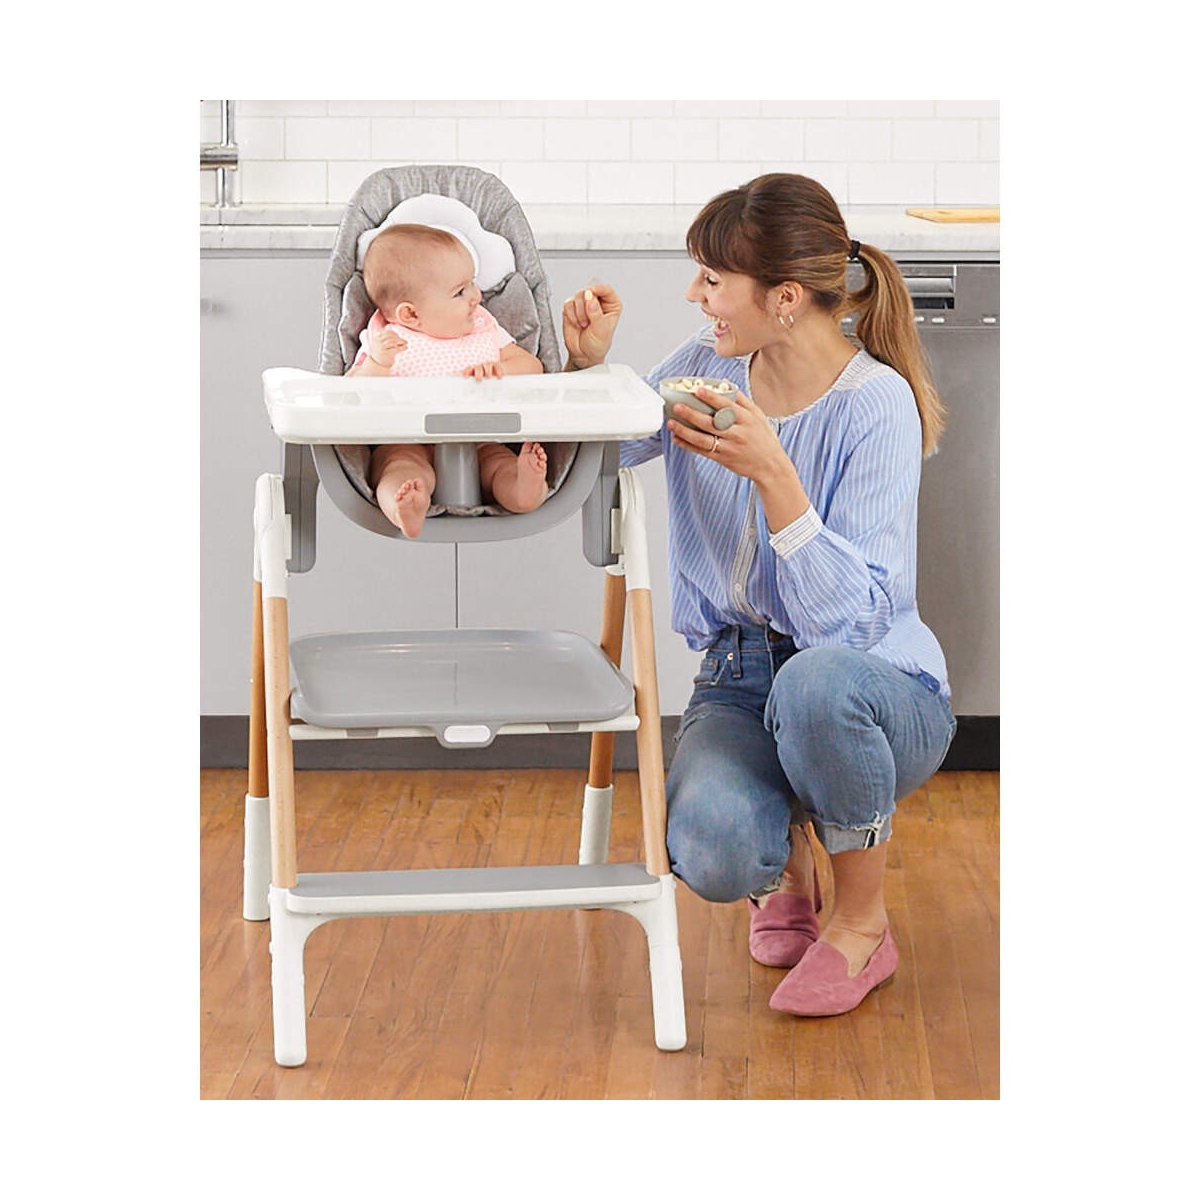 مزایای استفاده از صندلی غذای کودک این است که نشستن کودک روی صندلی خودش و غذاخوردن در کنار پدر و مادر، حس نزدیکی و آرامش به او می‌دهد.